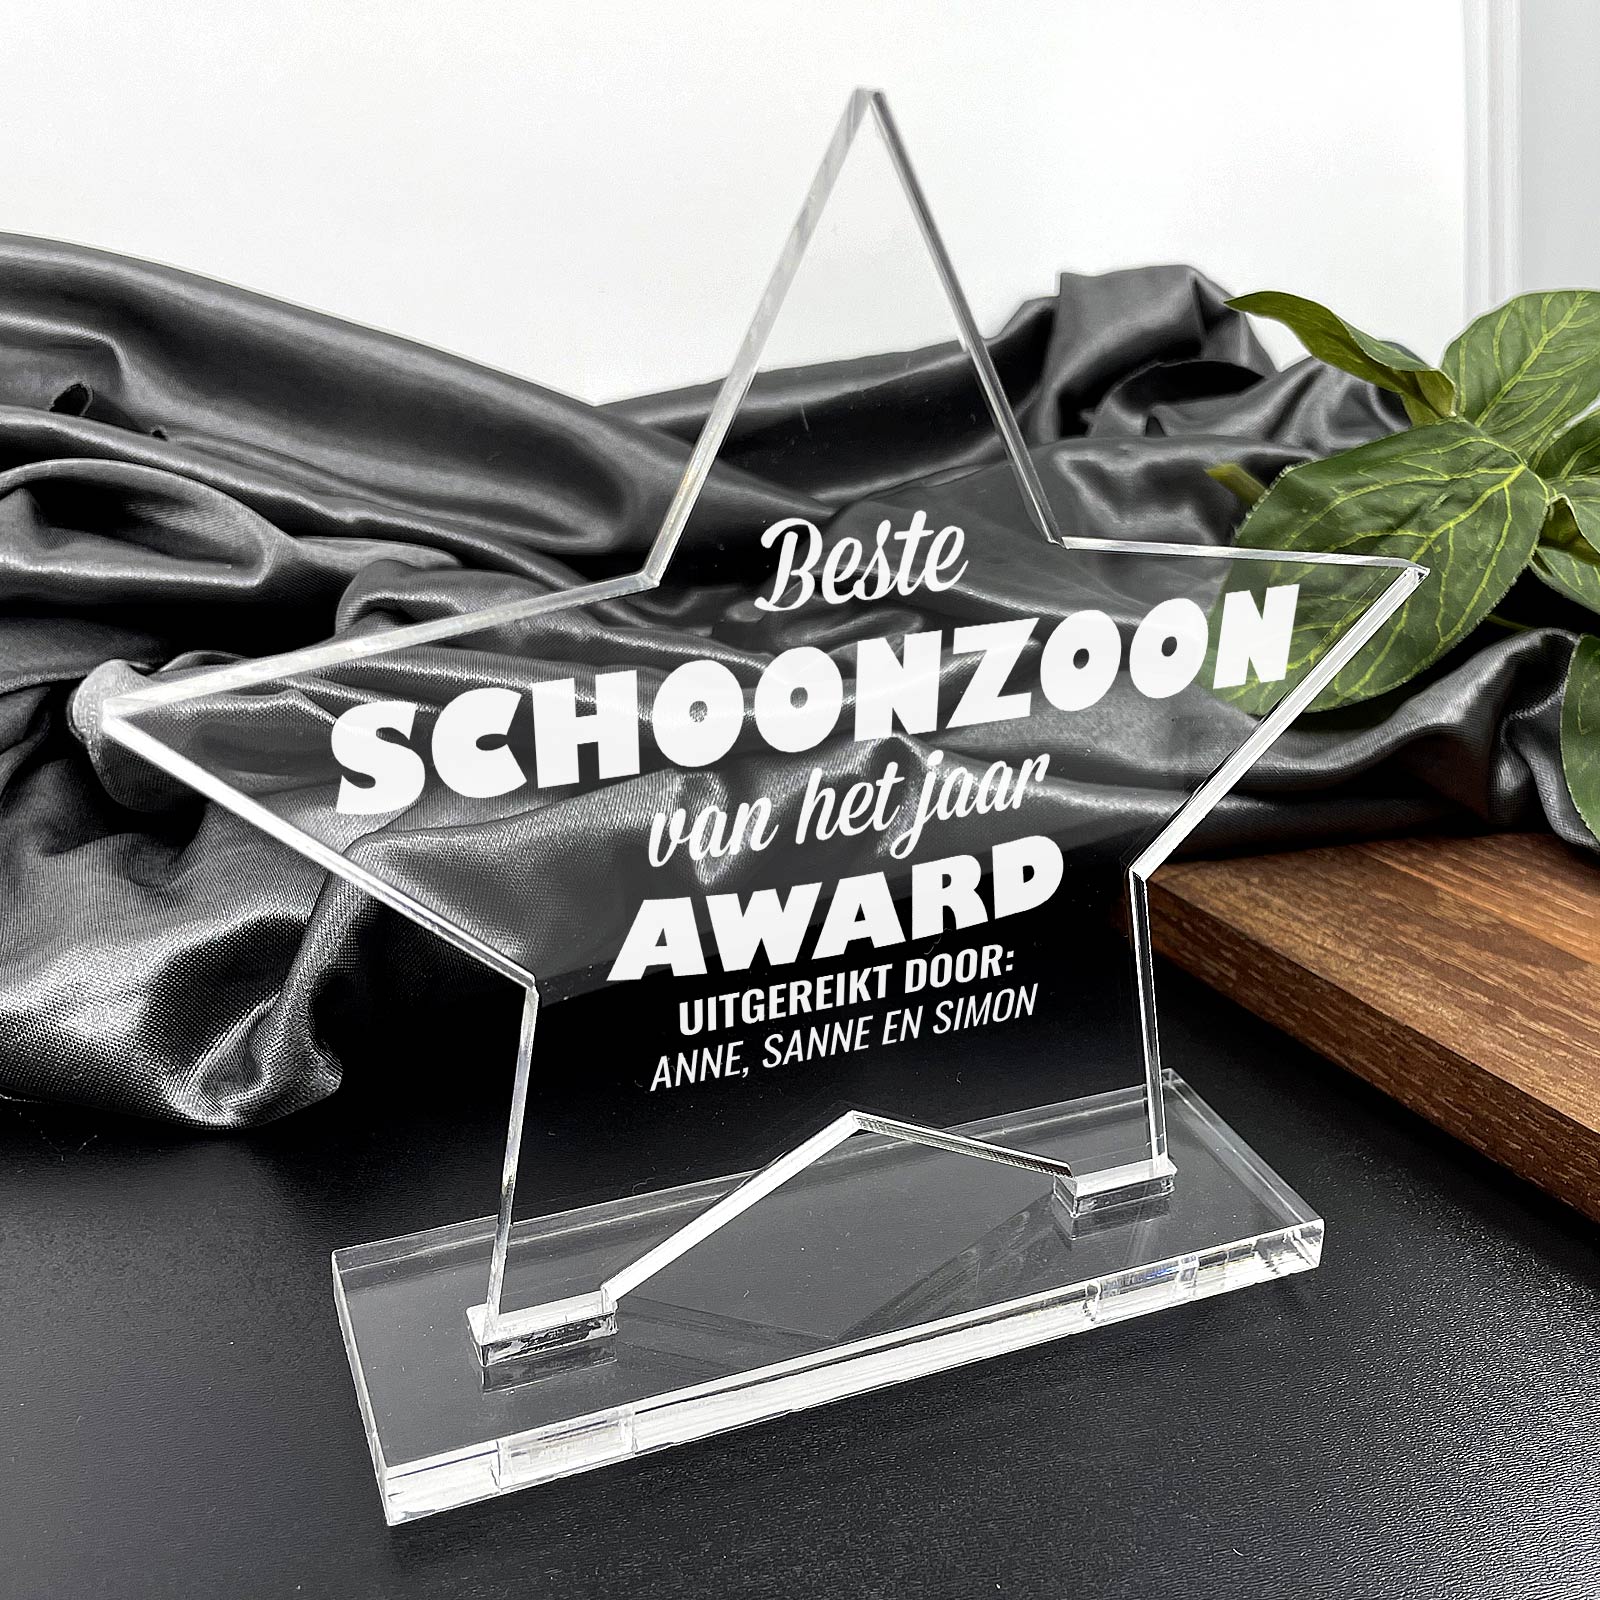 Beste Schoonzoon Van Het Jaar Award - Bella Mia